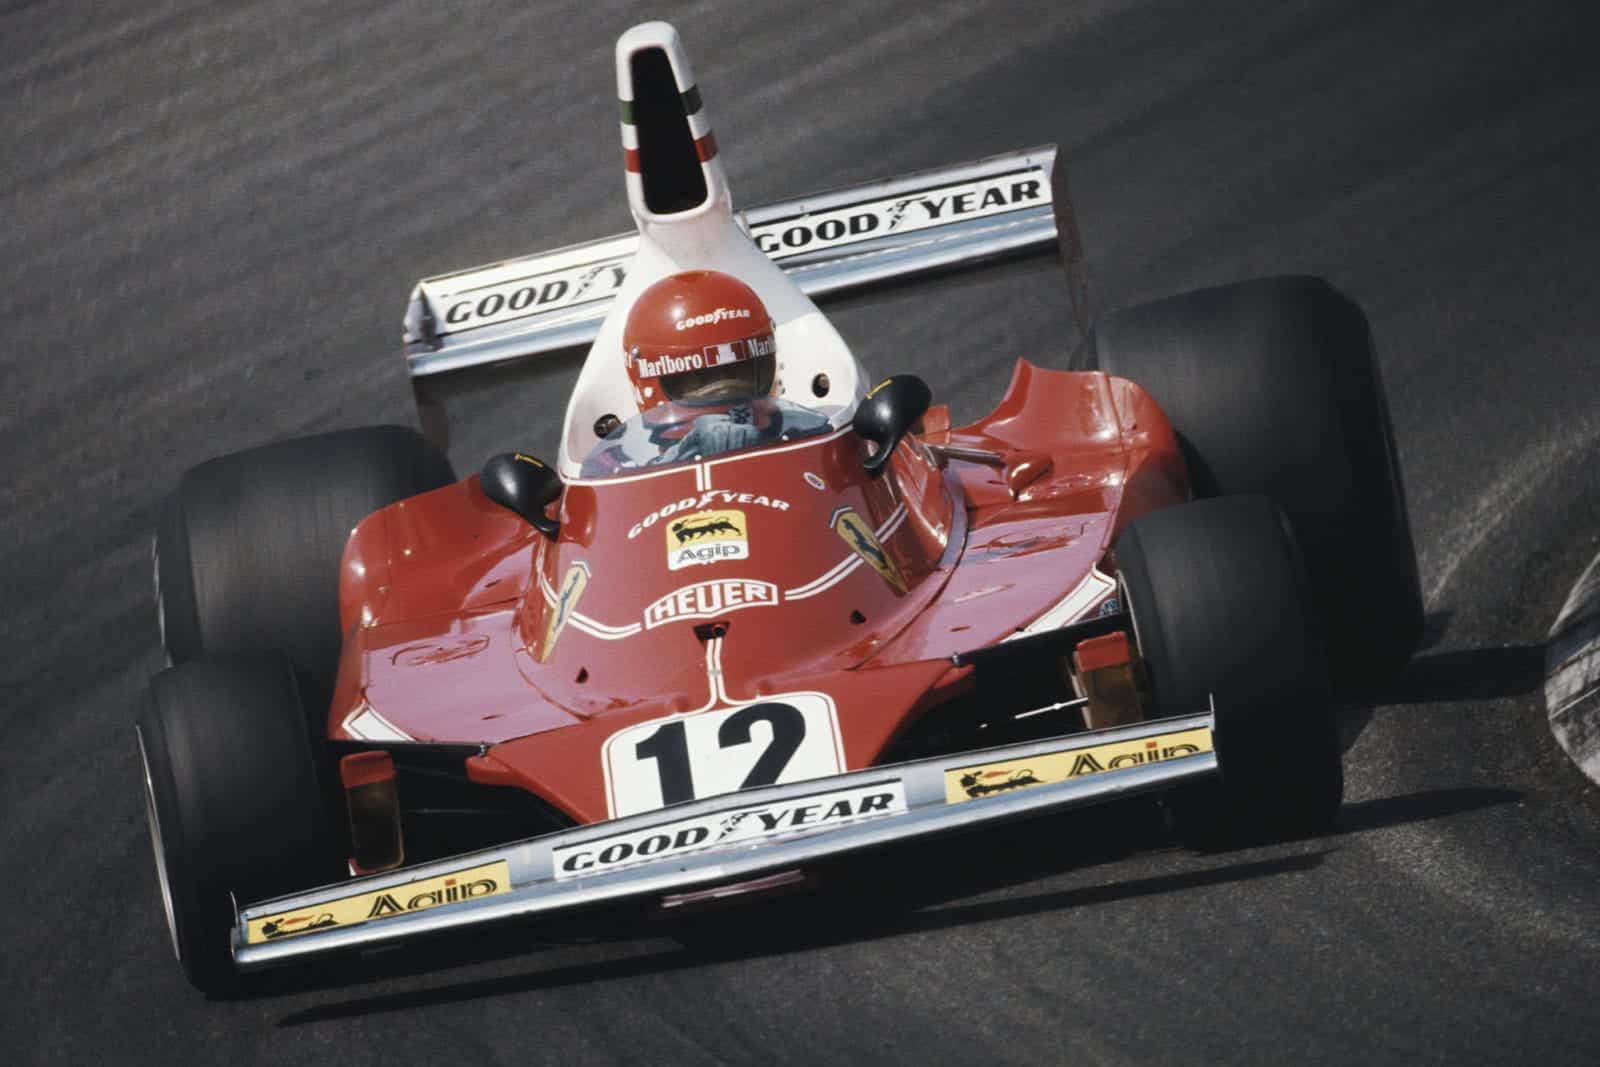 Niki Lauda in his Ferrari at the 1975 Belgian Grand Prix